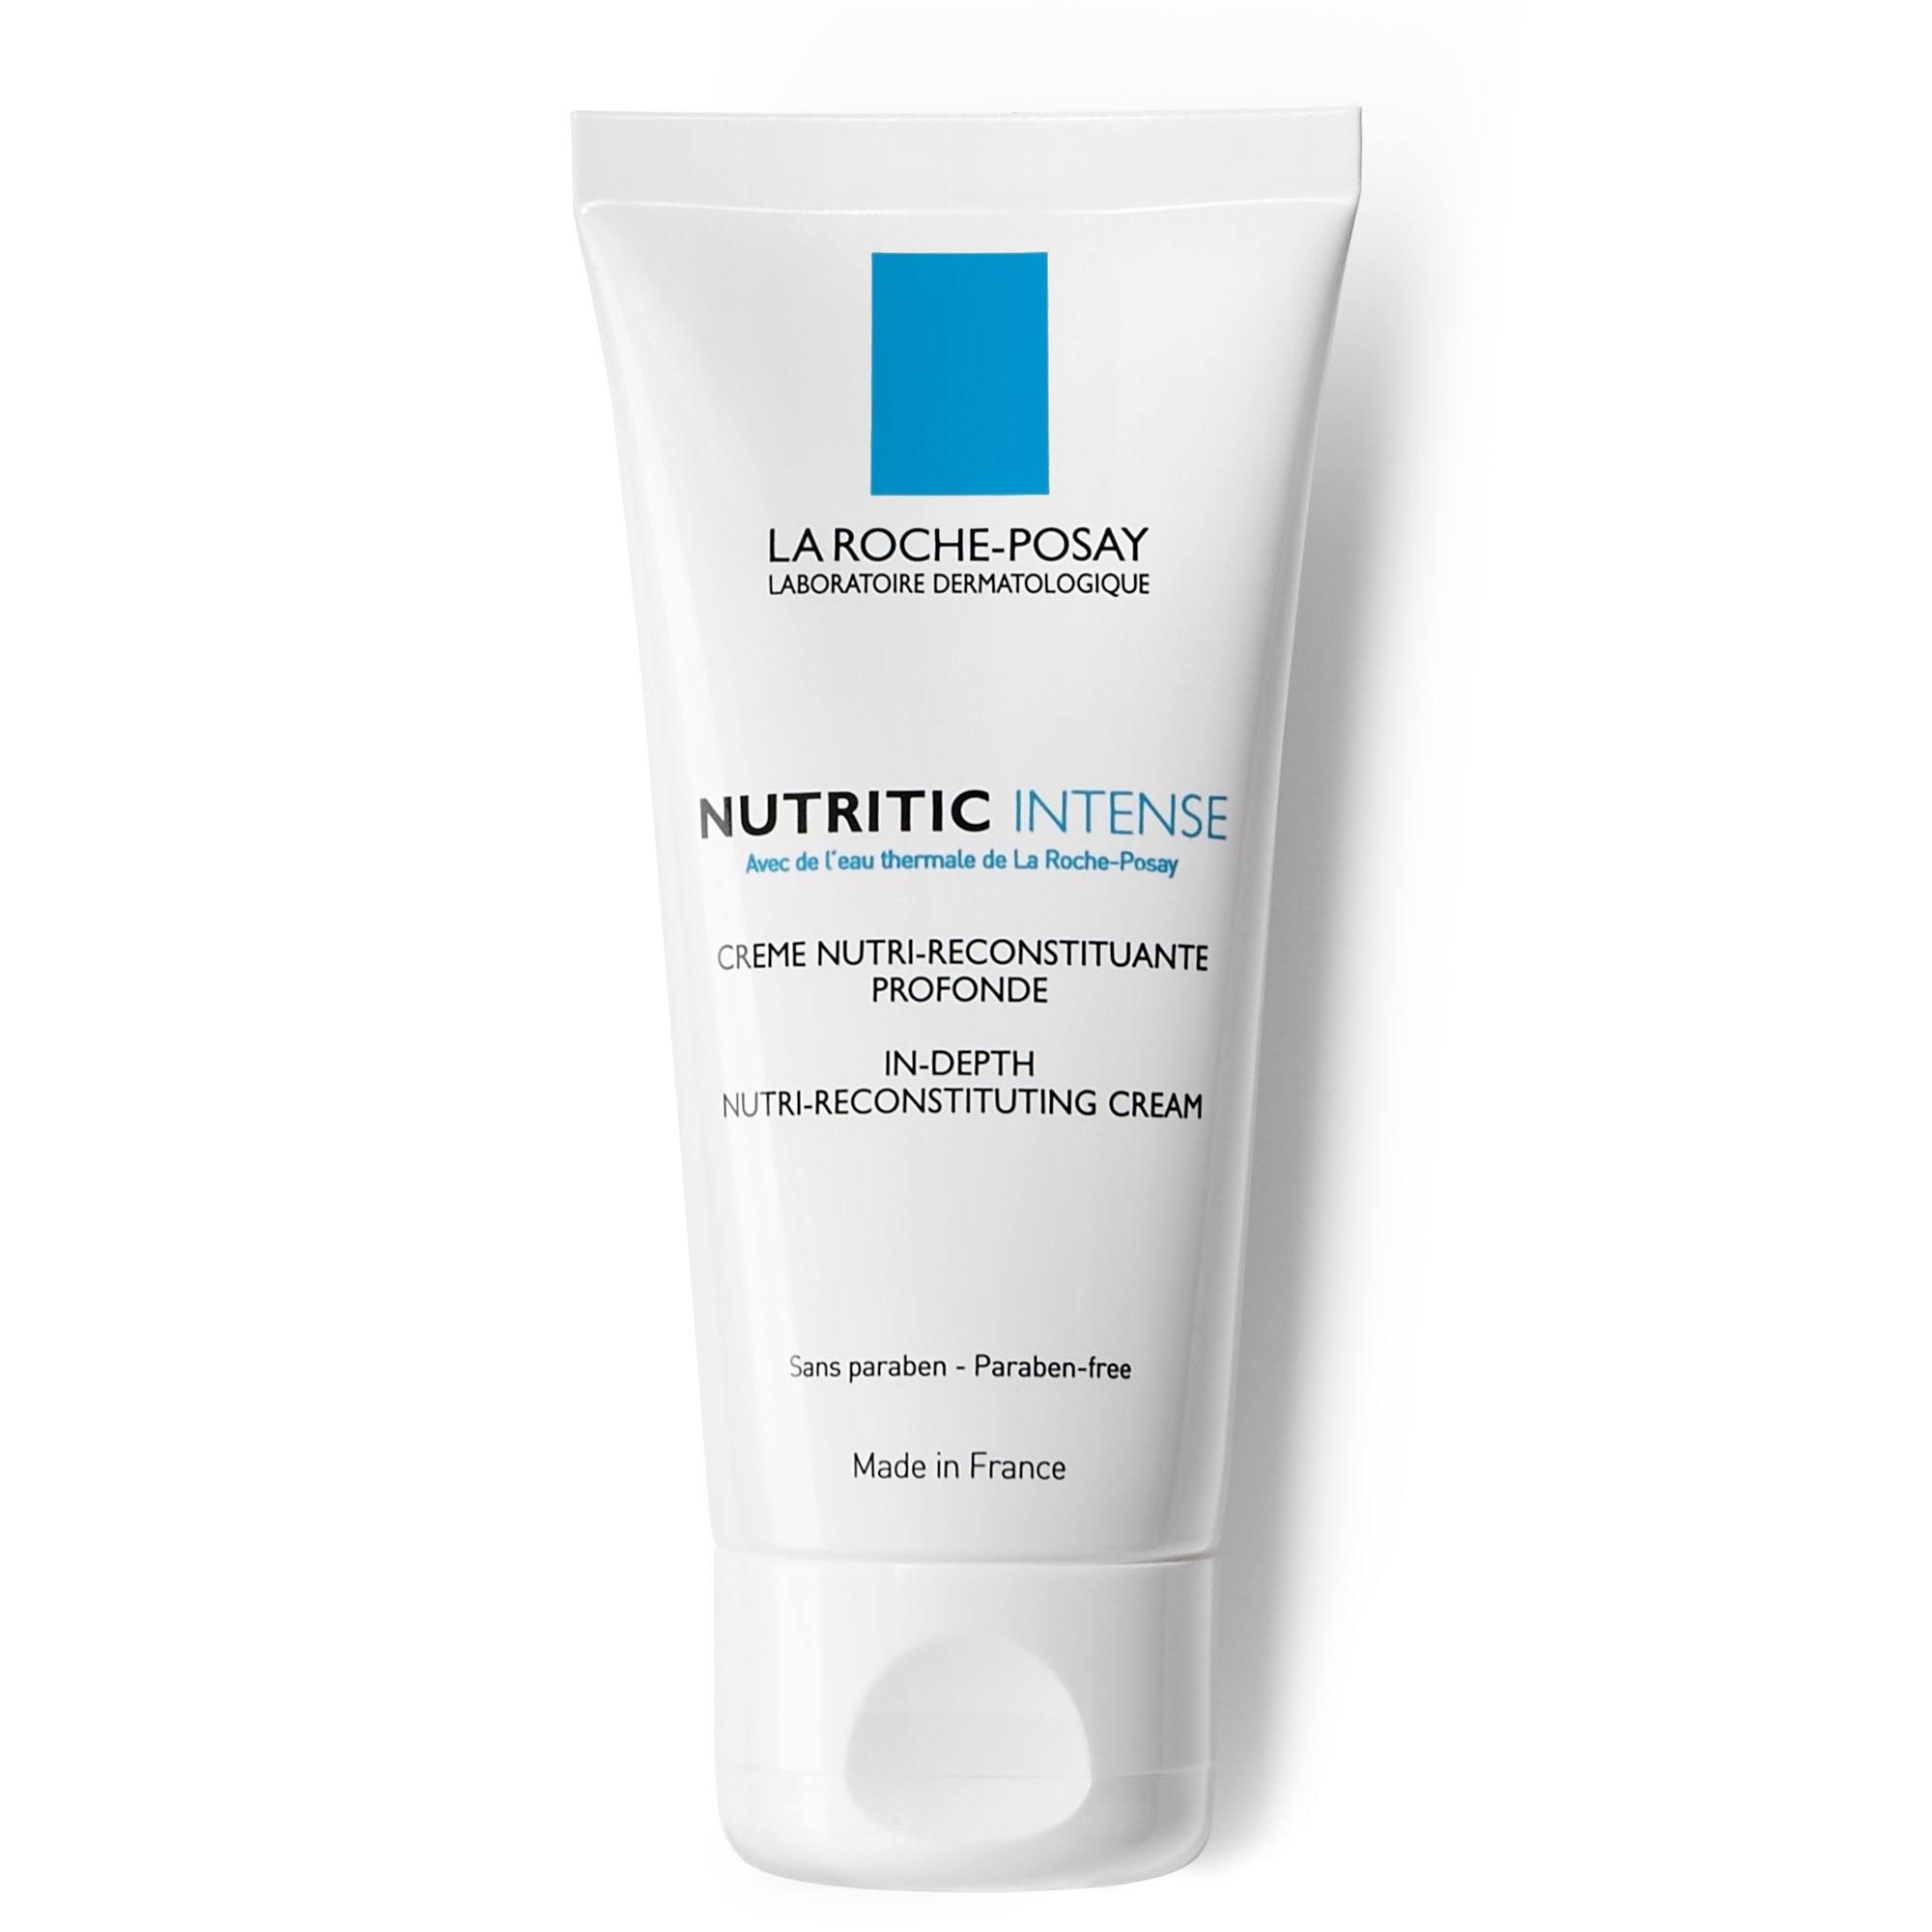 La Roche-Posay Nutritic Intense In-Depth Nutri-Reconstituante Cream - with Thermal Water, 50ml